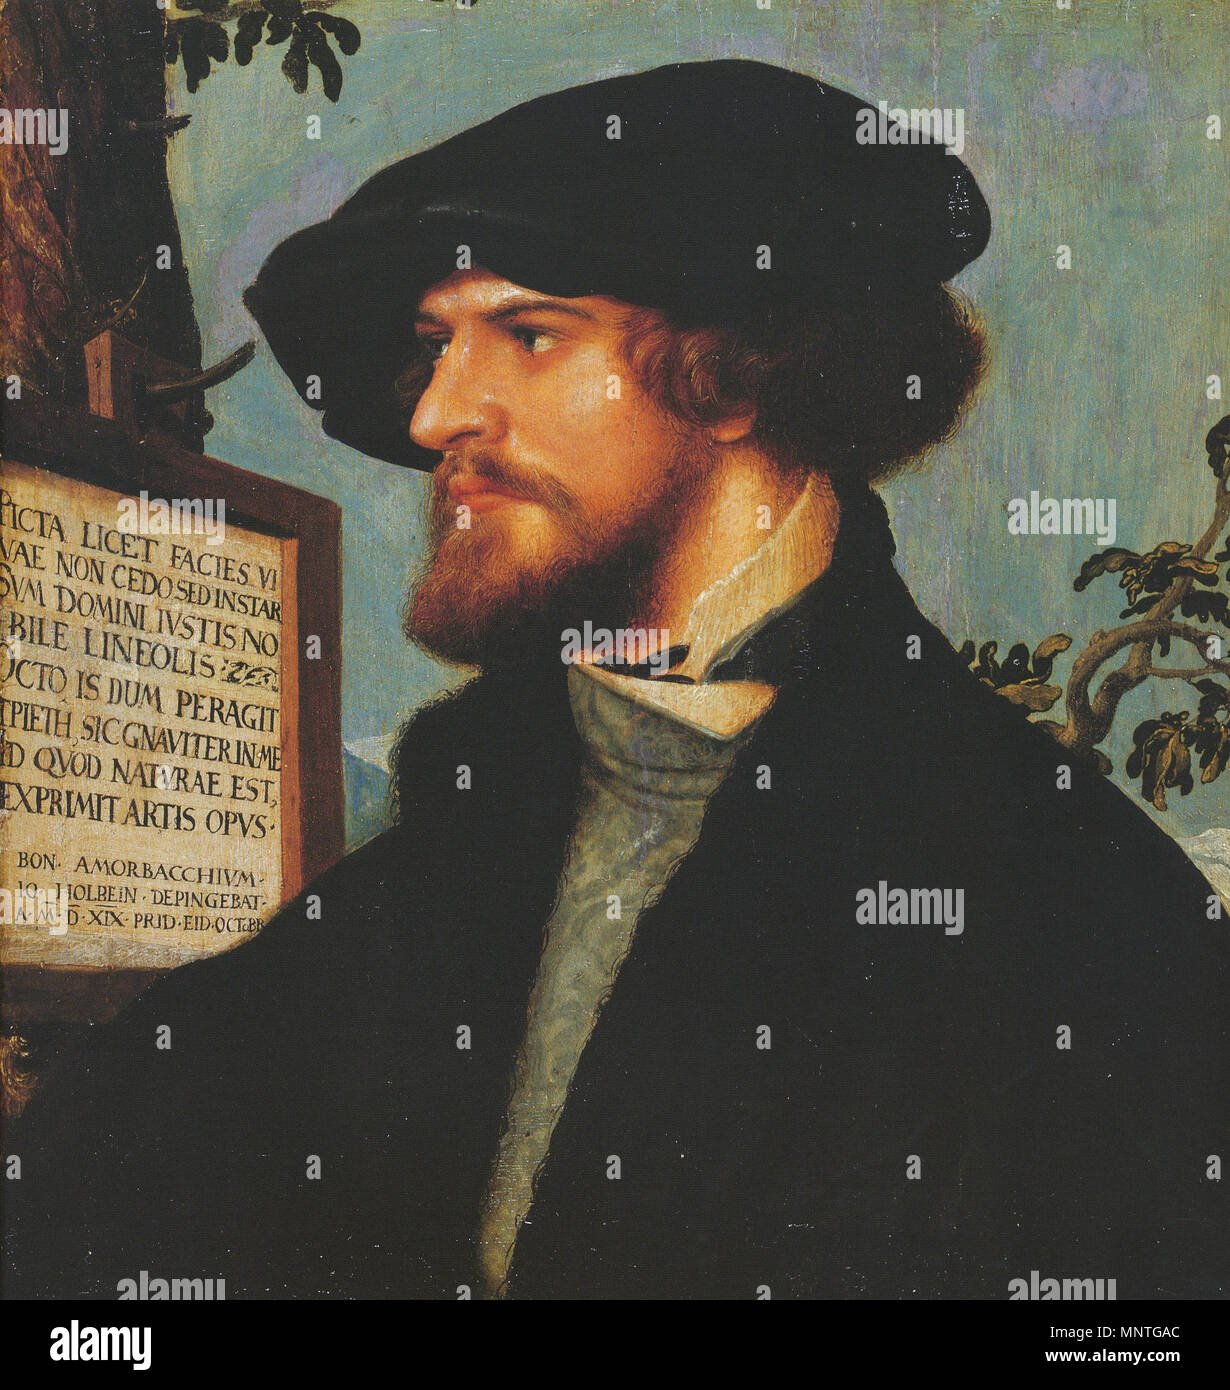 Portrait von bonifacius Amerbach. Englisch: Das Porträt war eines der ersten Holbeins Kommissionen als Maler in Basel. Die jungen akademischen Bonifacius (oder Bonifatius) Amerbach (1495-1562), Sohn eines Druckers, wurde ein Freund und Bewunderer von Holbein, als beide Männer in den humanistischen Kreisen in Basel gemischt. Amerbach, der fortfuhr, Römisches Recht an der Universität Basel zu lehren, war auch ein Freund der großen humanistischen Gelehrten Erasmus Desiderius, der ihm seine einzige Erbe gemacht. Er war ein Sammler von holbein's Kunst, und seine Sammlung, erweitert durch seinen Sohn Basilius, der Kern der Basler Kunstmuseum gebildet. Die fast squa Stockfoto